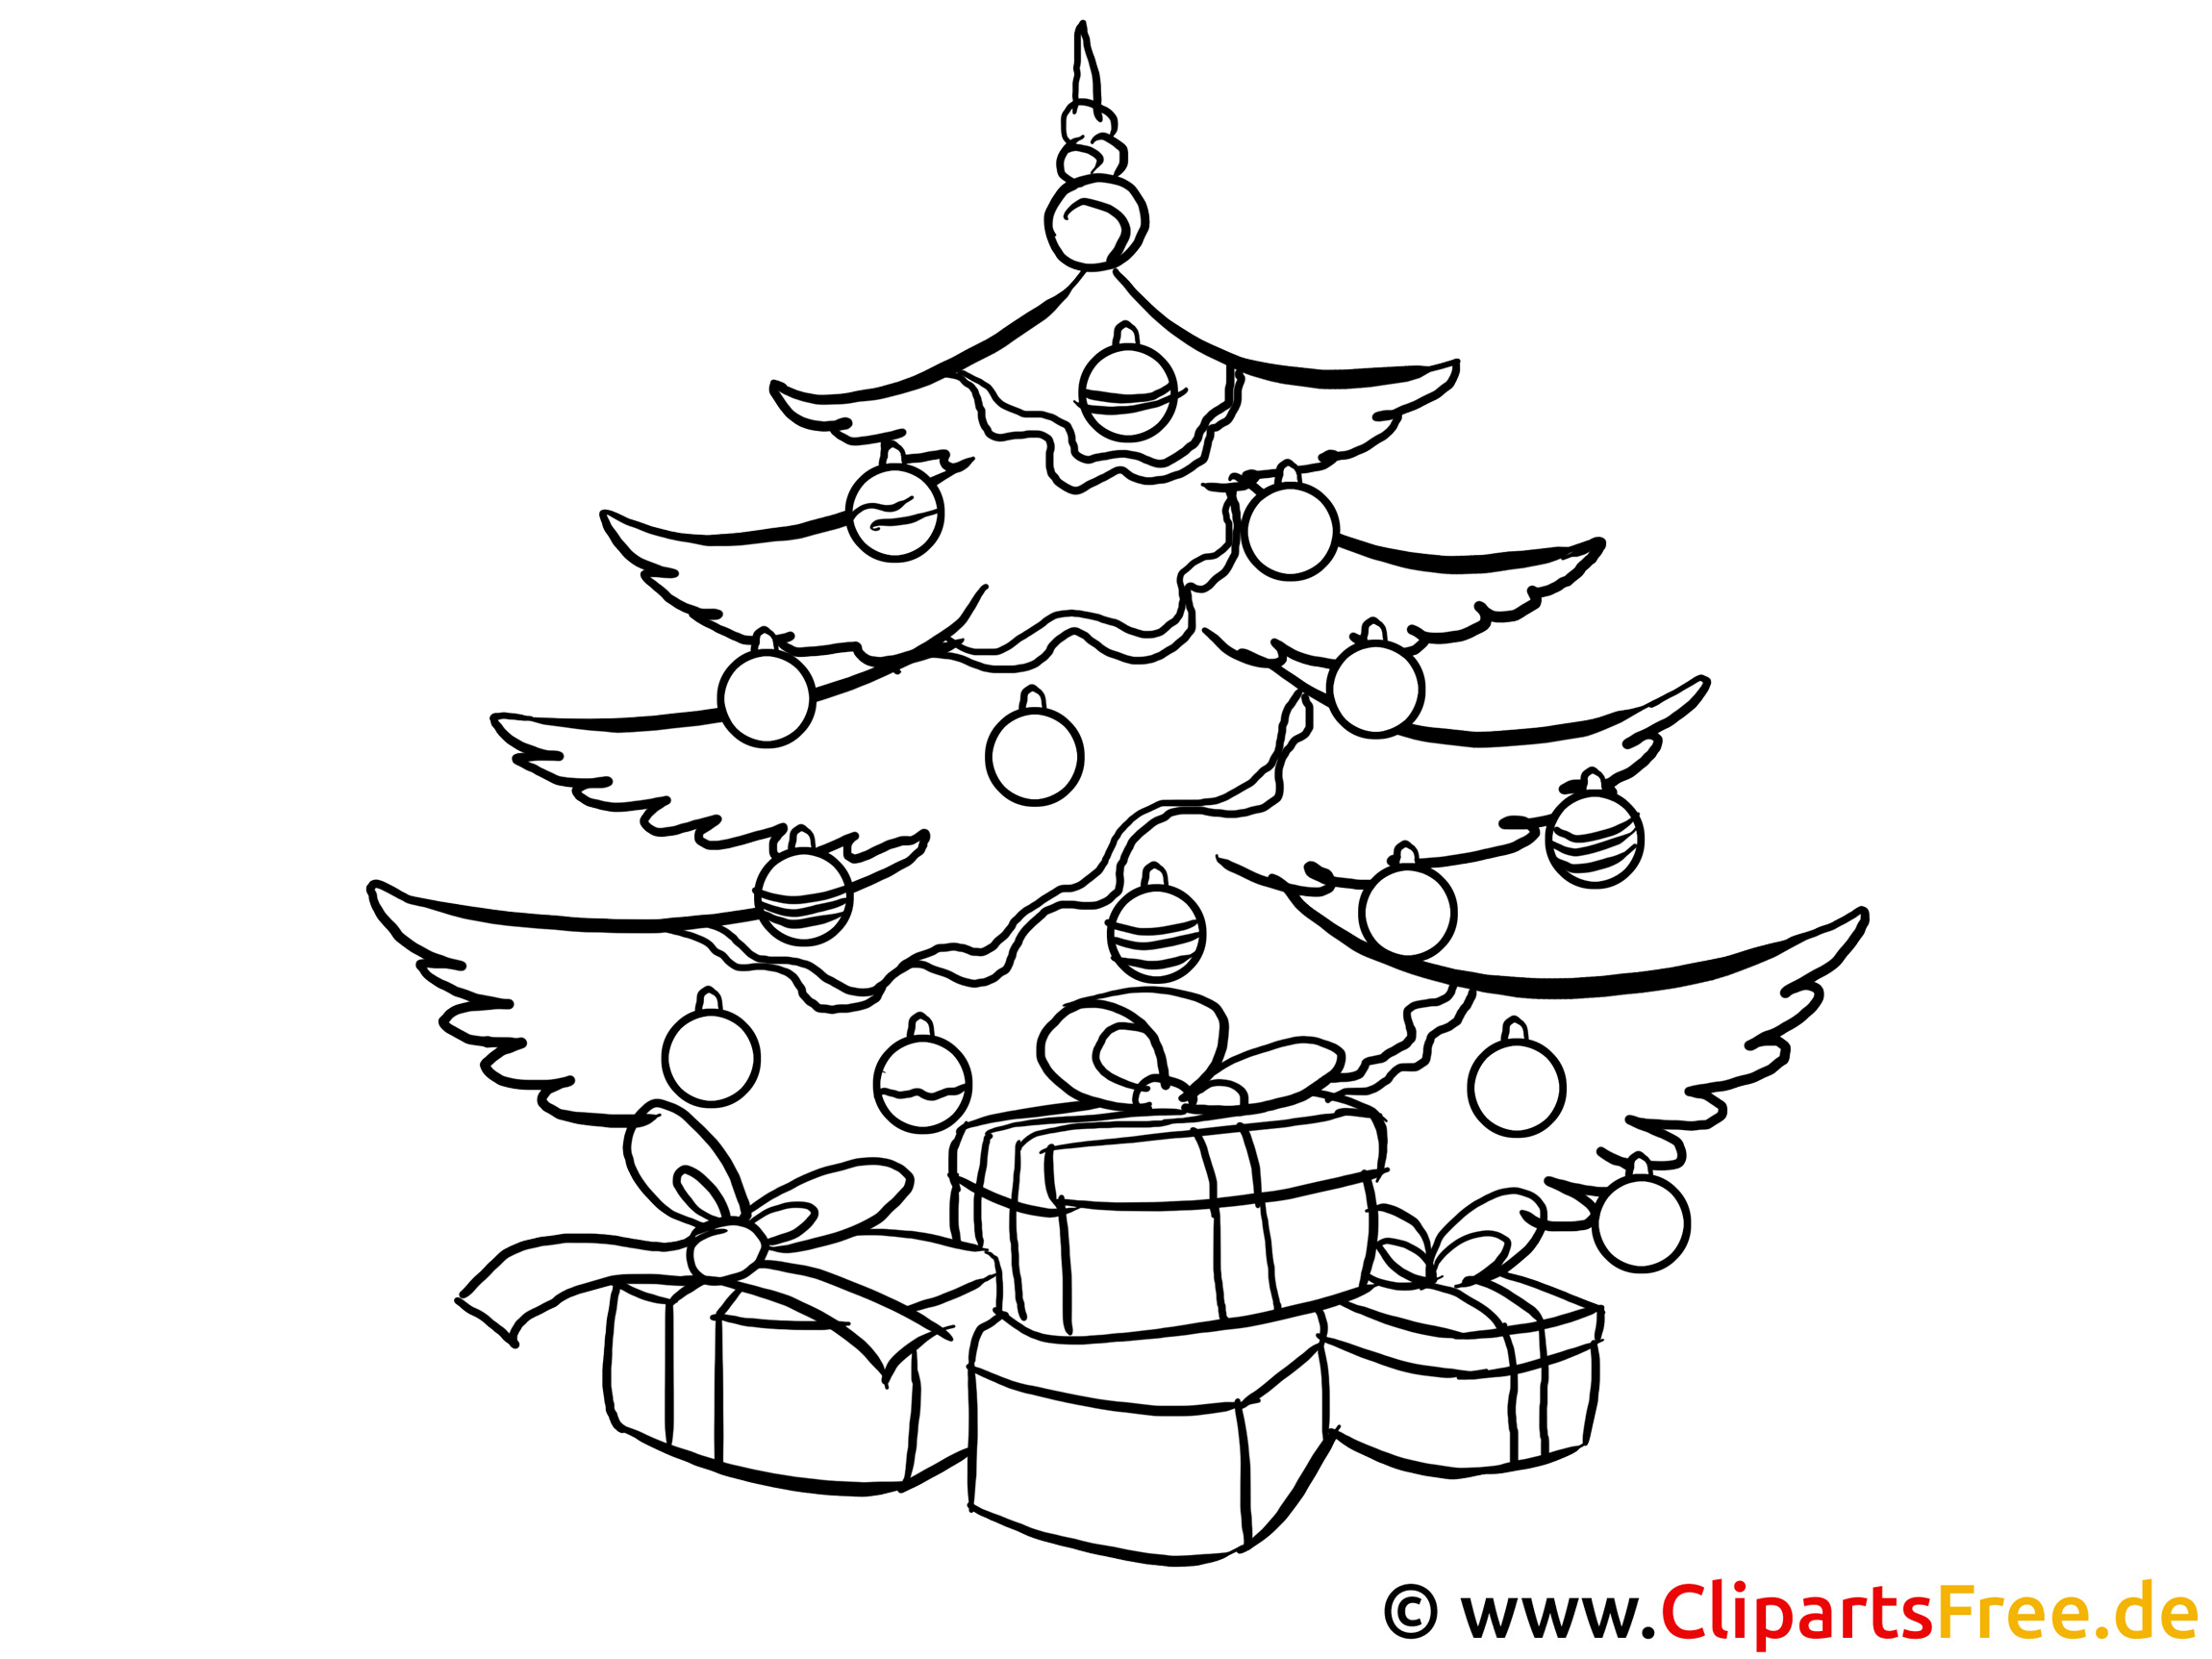 40 weihnachtsbilder zum ausmalen tannenbaum - besten